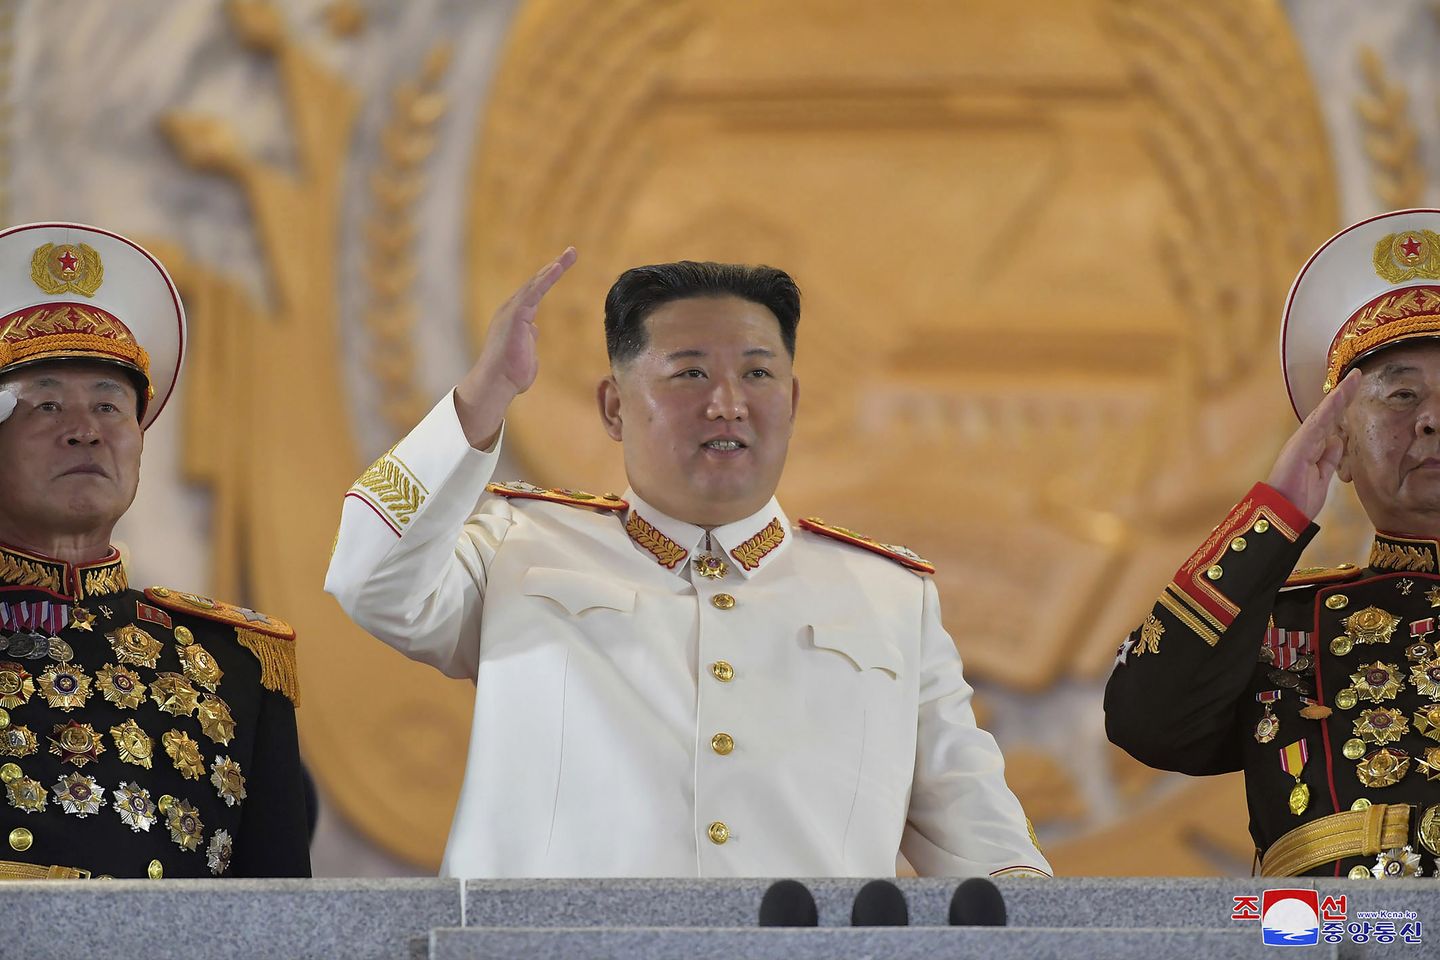 Seul: Kuzey Kore denize doğru 3 balistik füze fırlattı